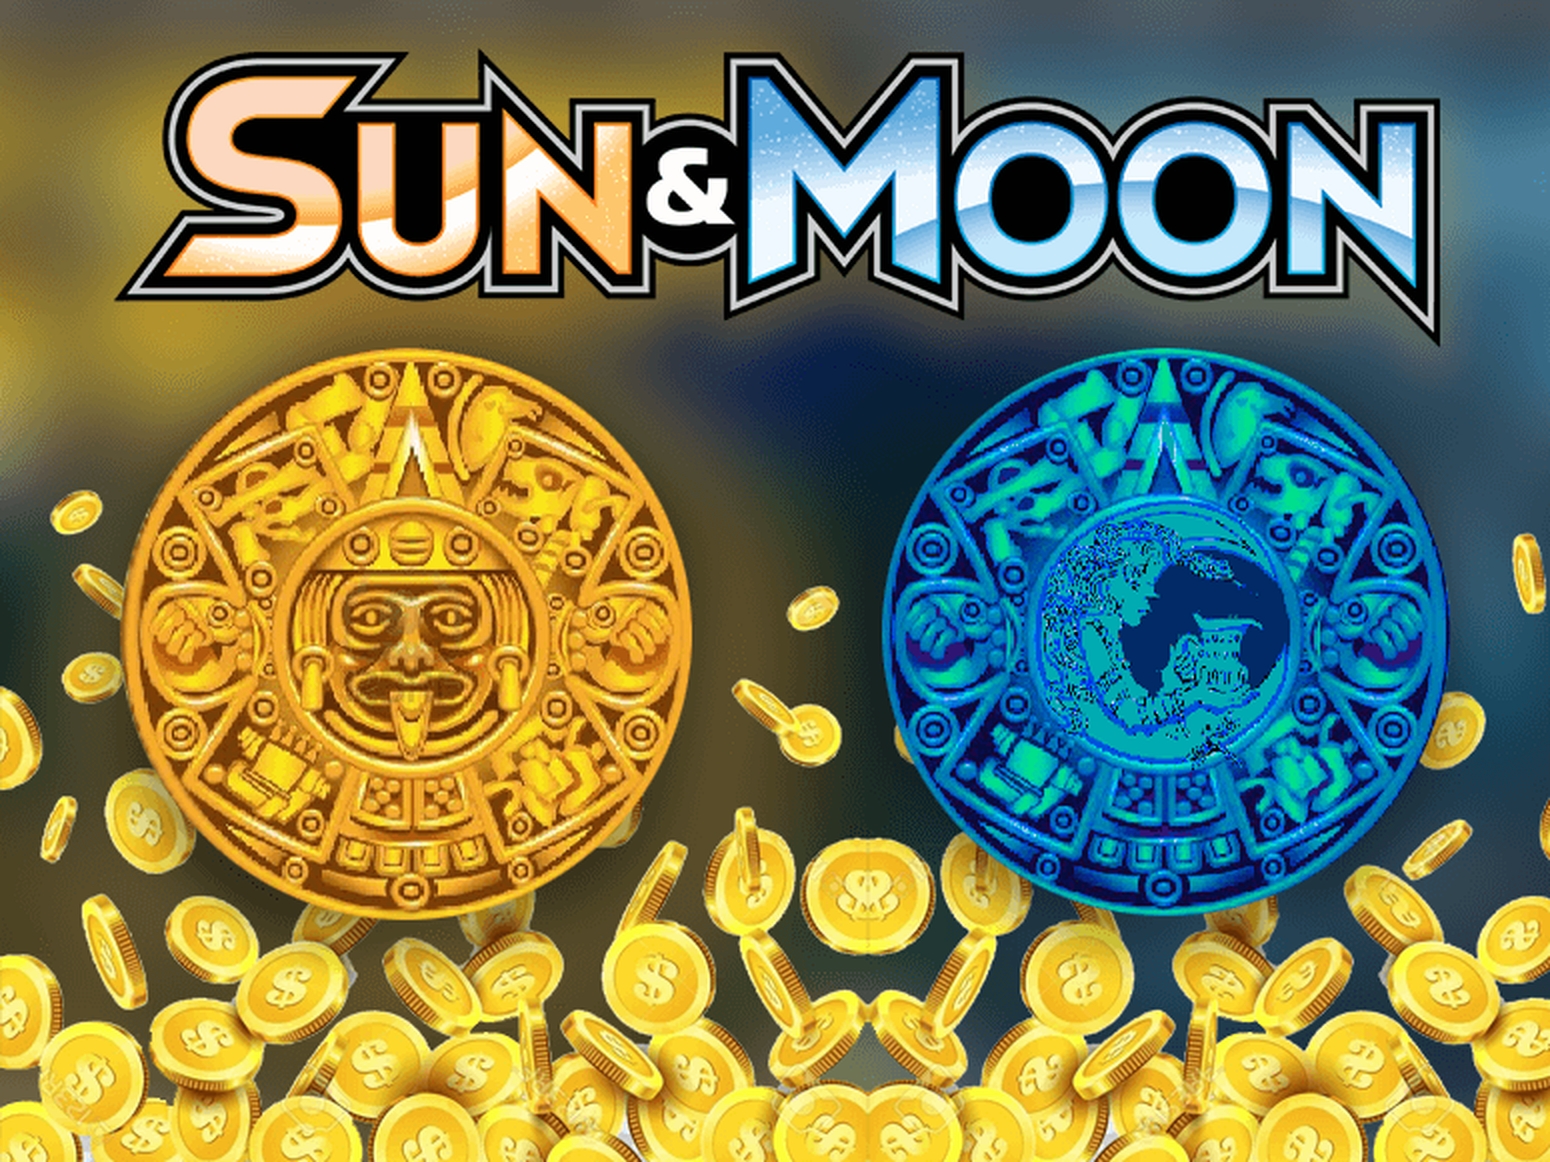 Sun & Moon demo